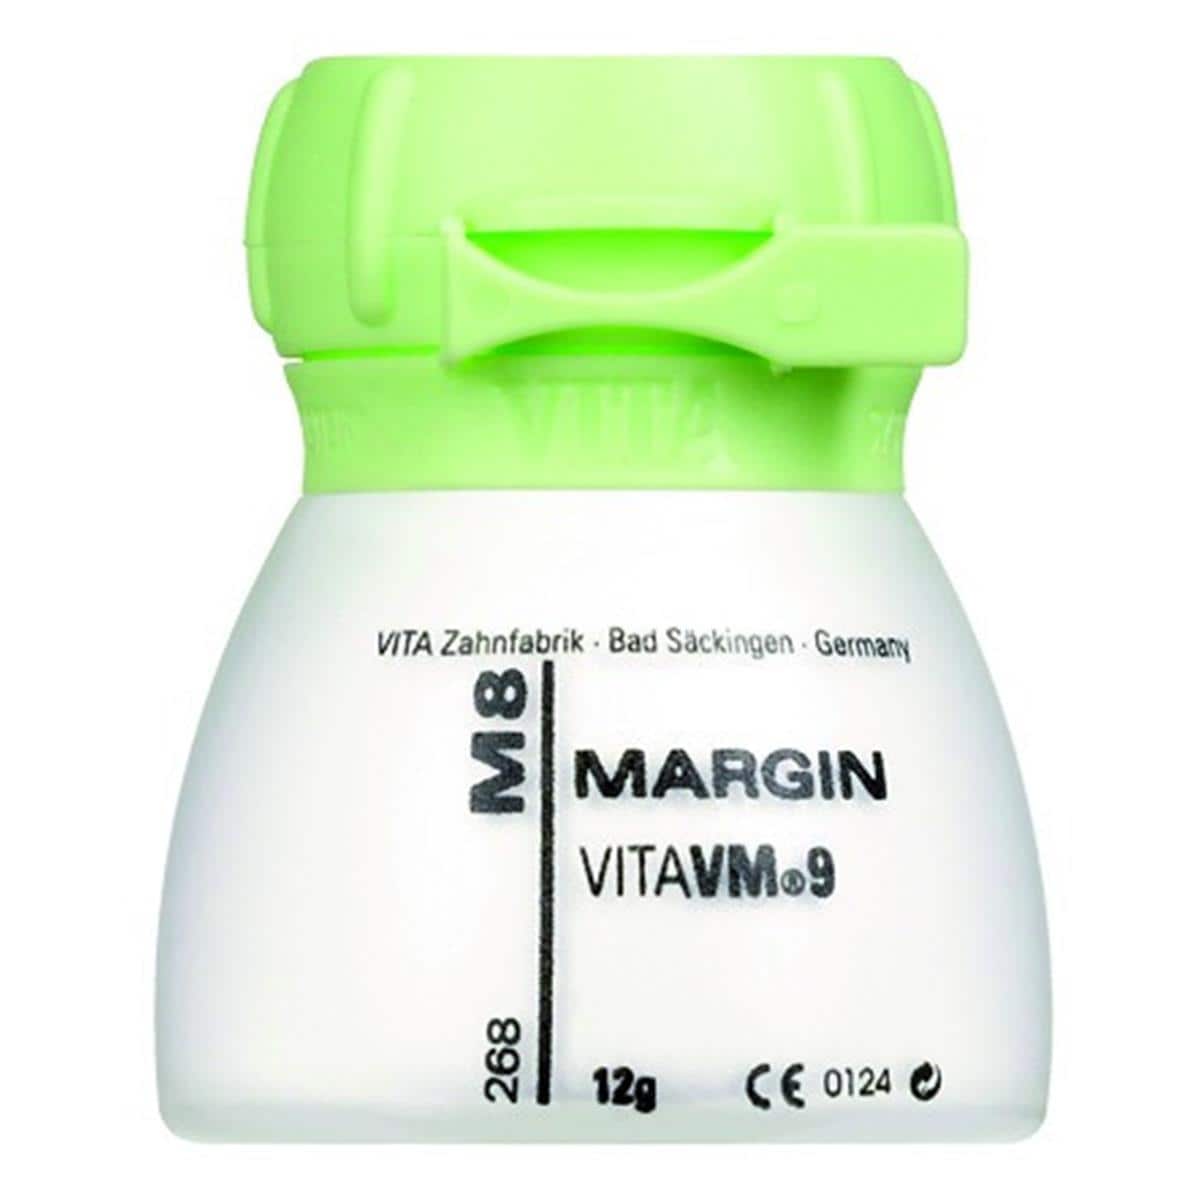 VM9 VITA - Margin - M8 - Le pot de 12 g